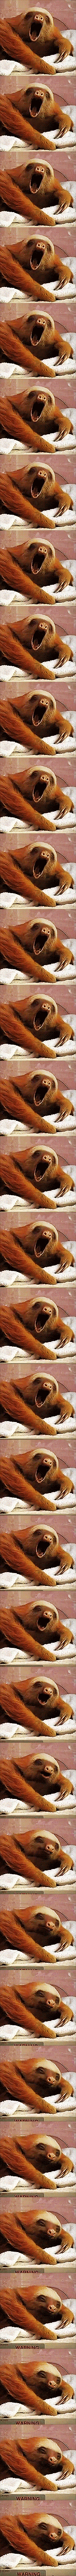 Cute sloth yawning